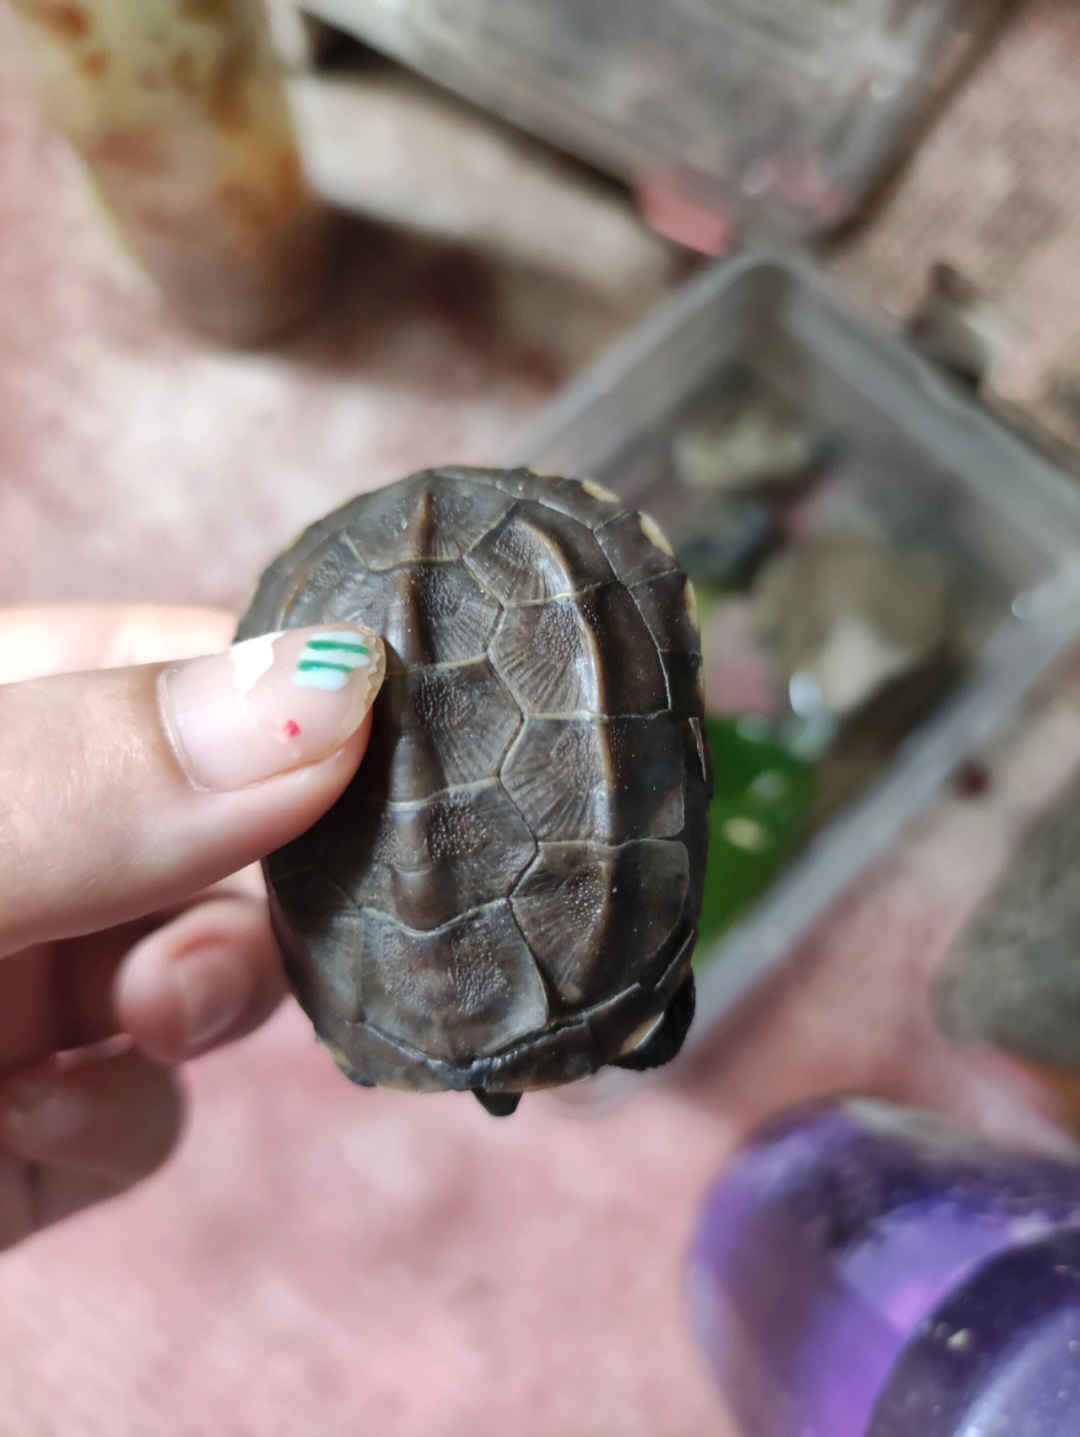 这是龟龟腐皮腐甲吗